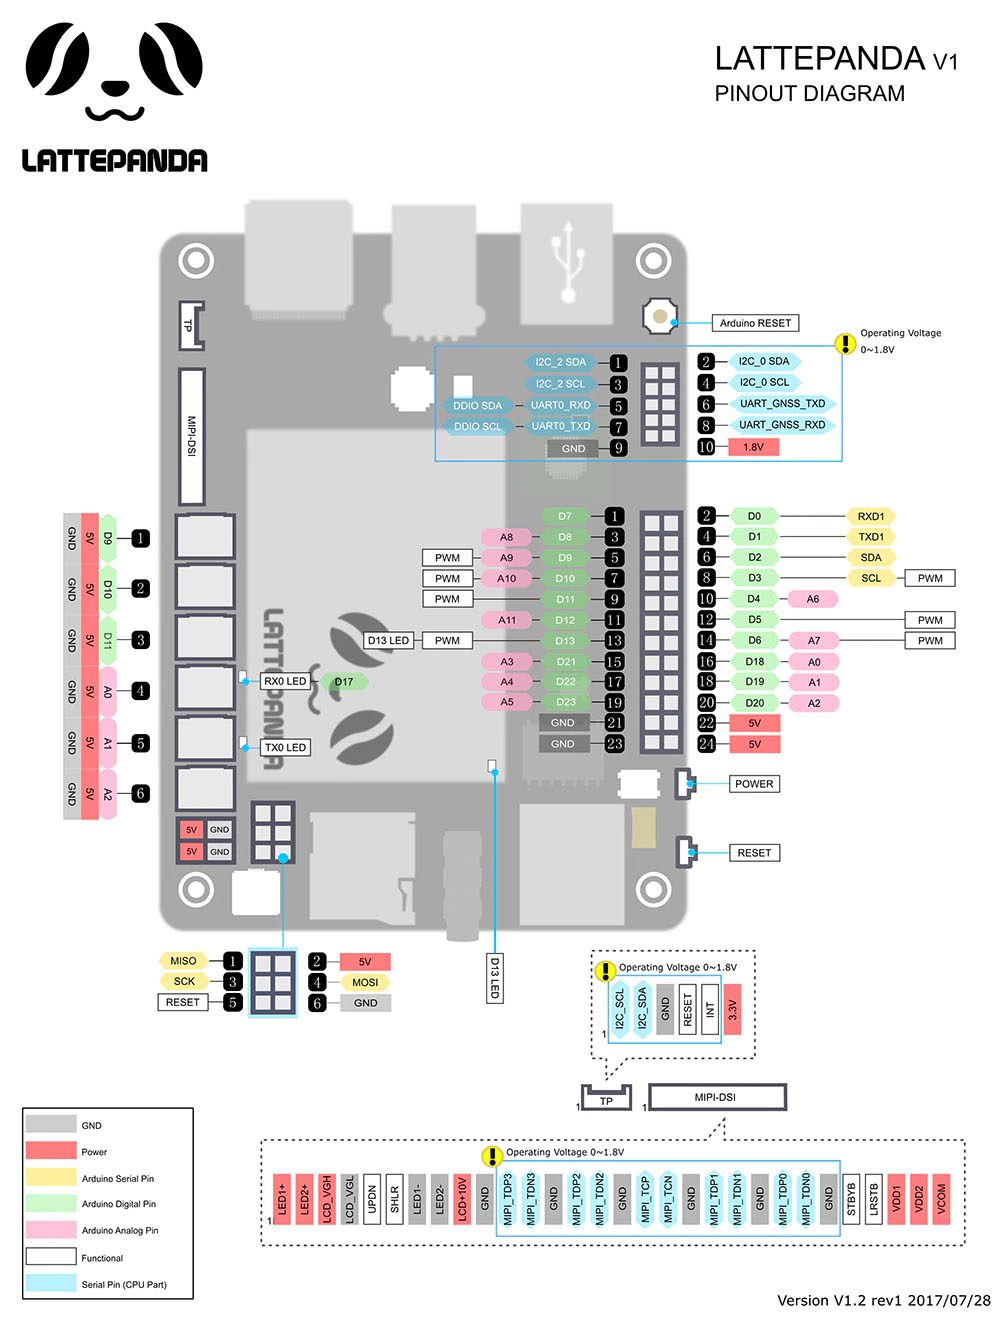 Lattepanda готова к работе с Arduino устройствами и датчиками